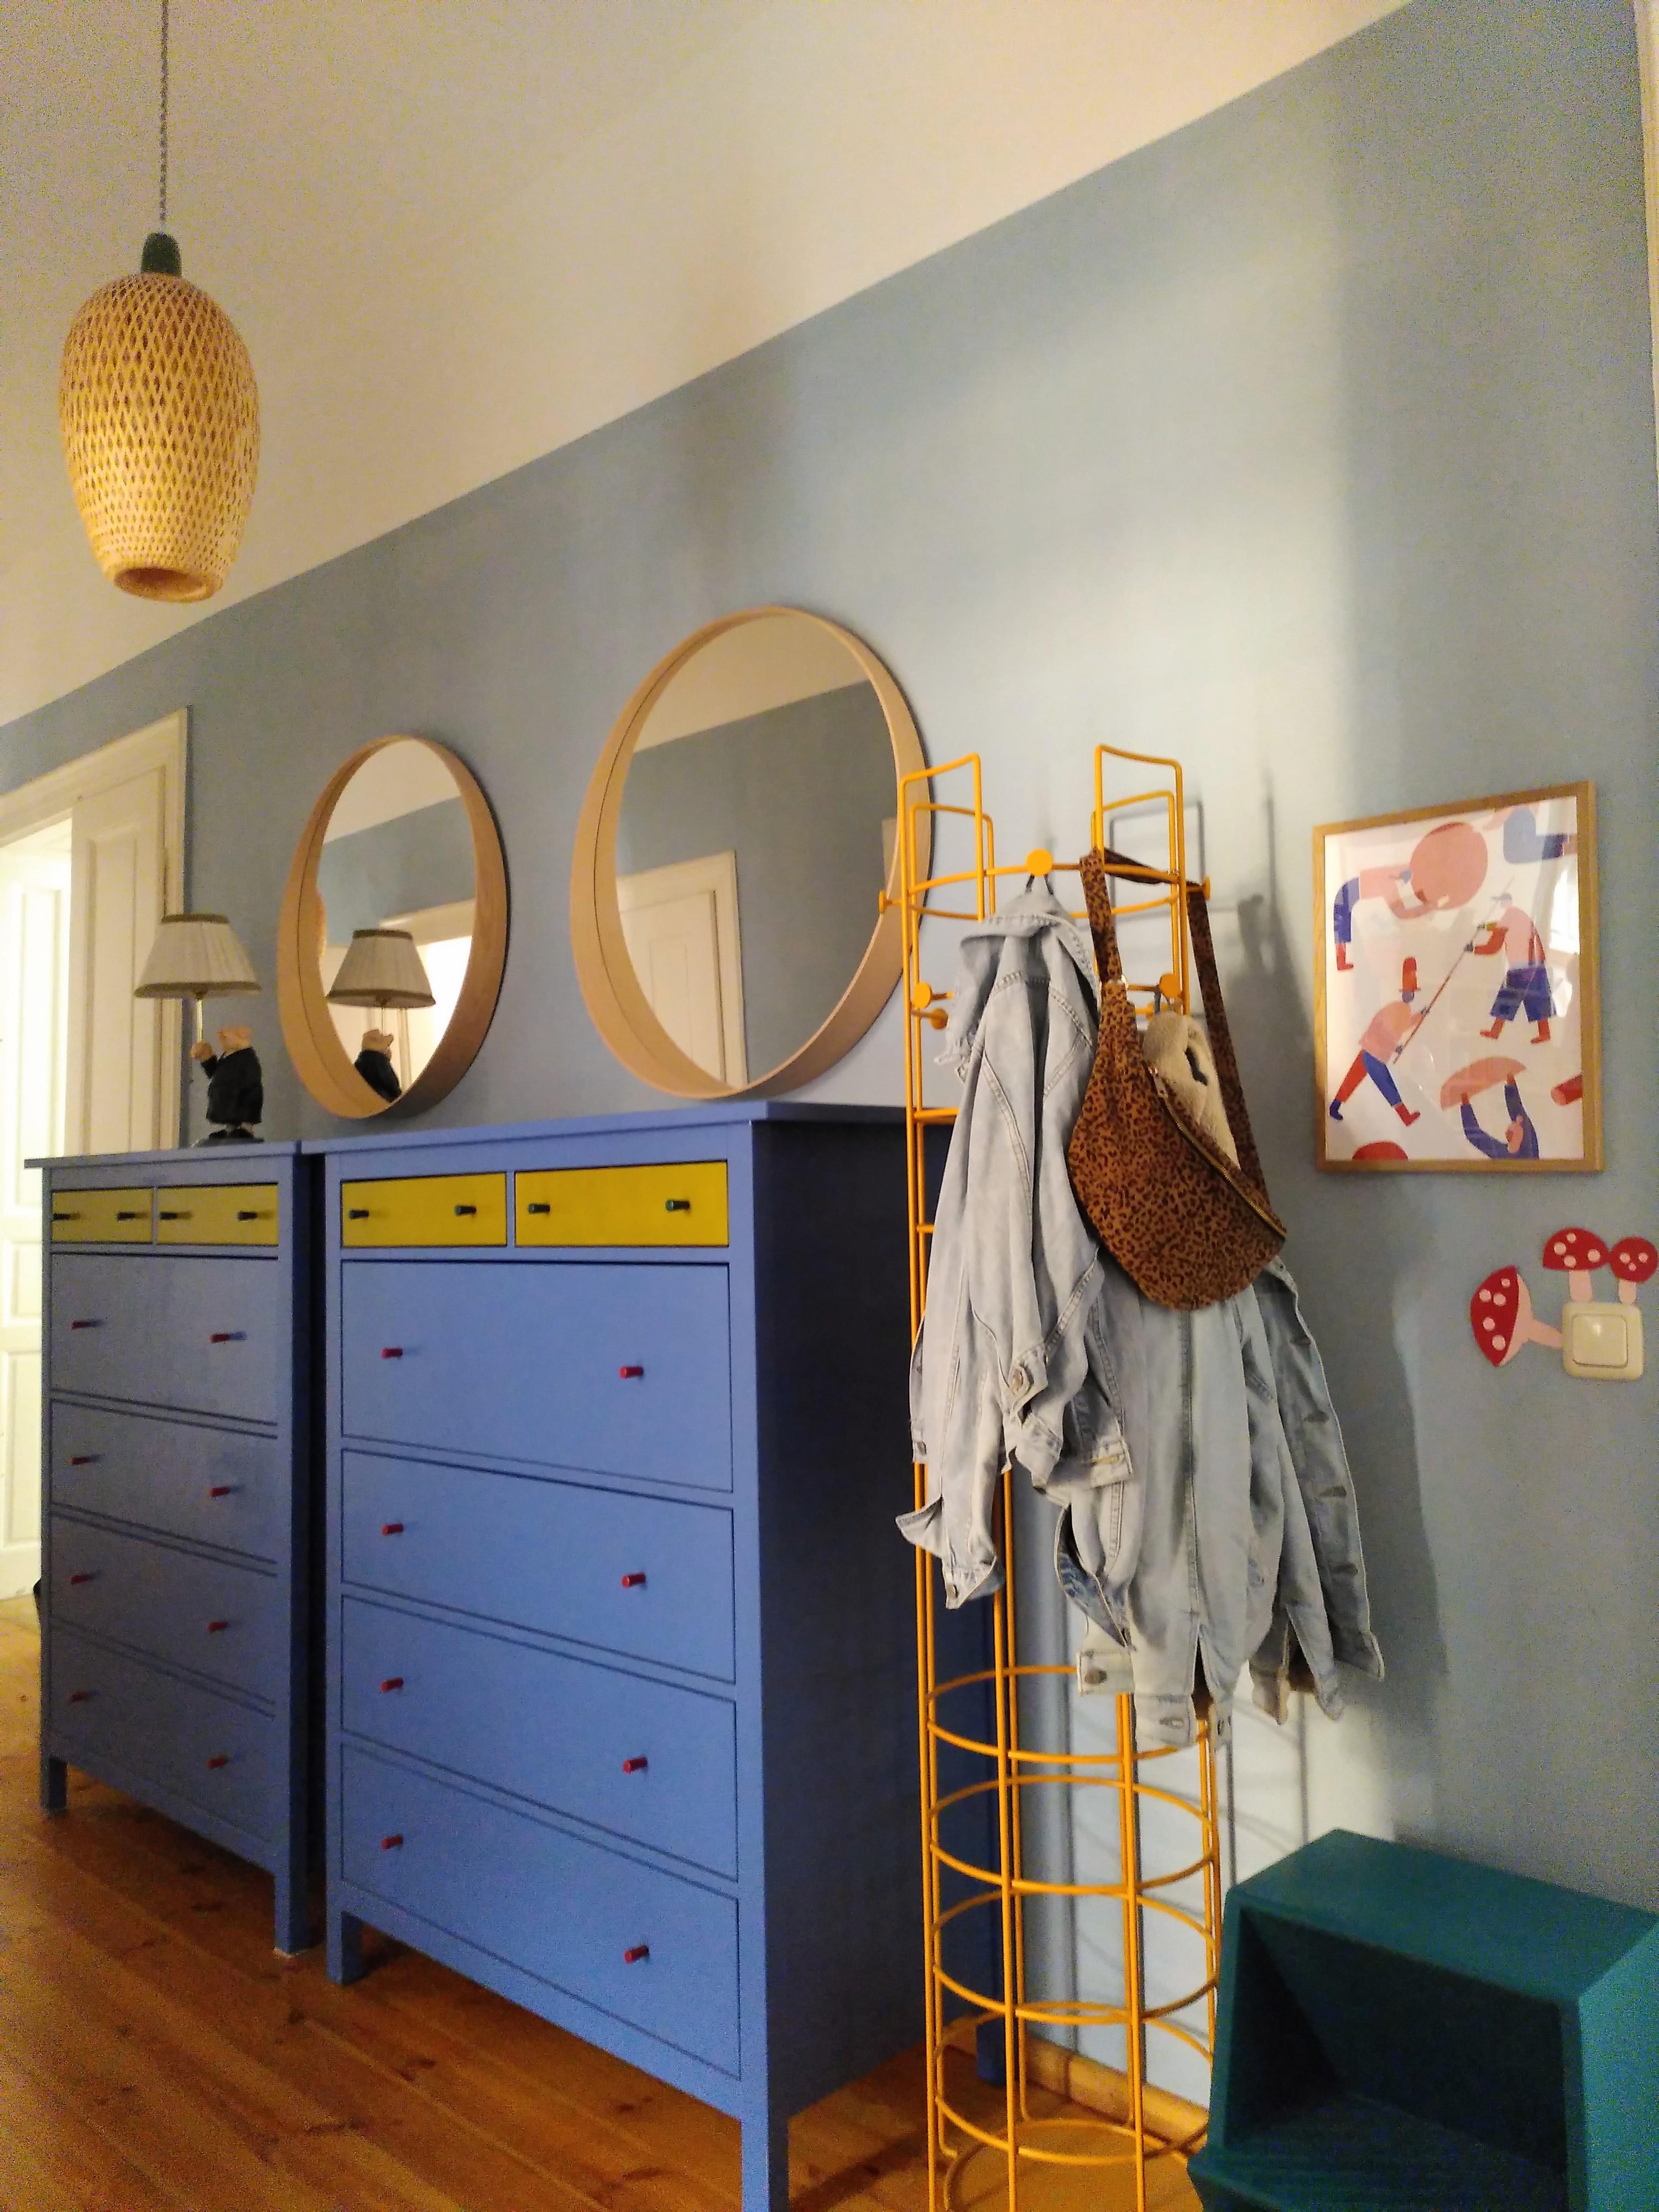 2x #ikeahack in einem Bild: #hemnes in Farbe und mit neuen Möbelknäufen und von der Tischlampe #böja zur Hängelampe.